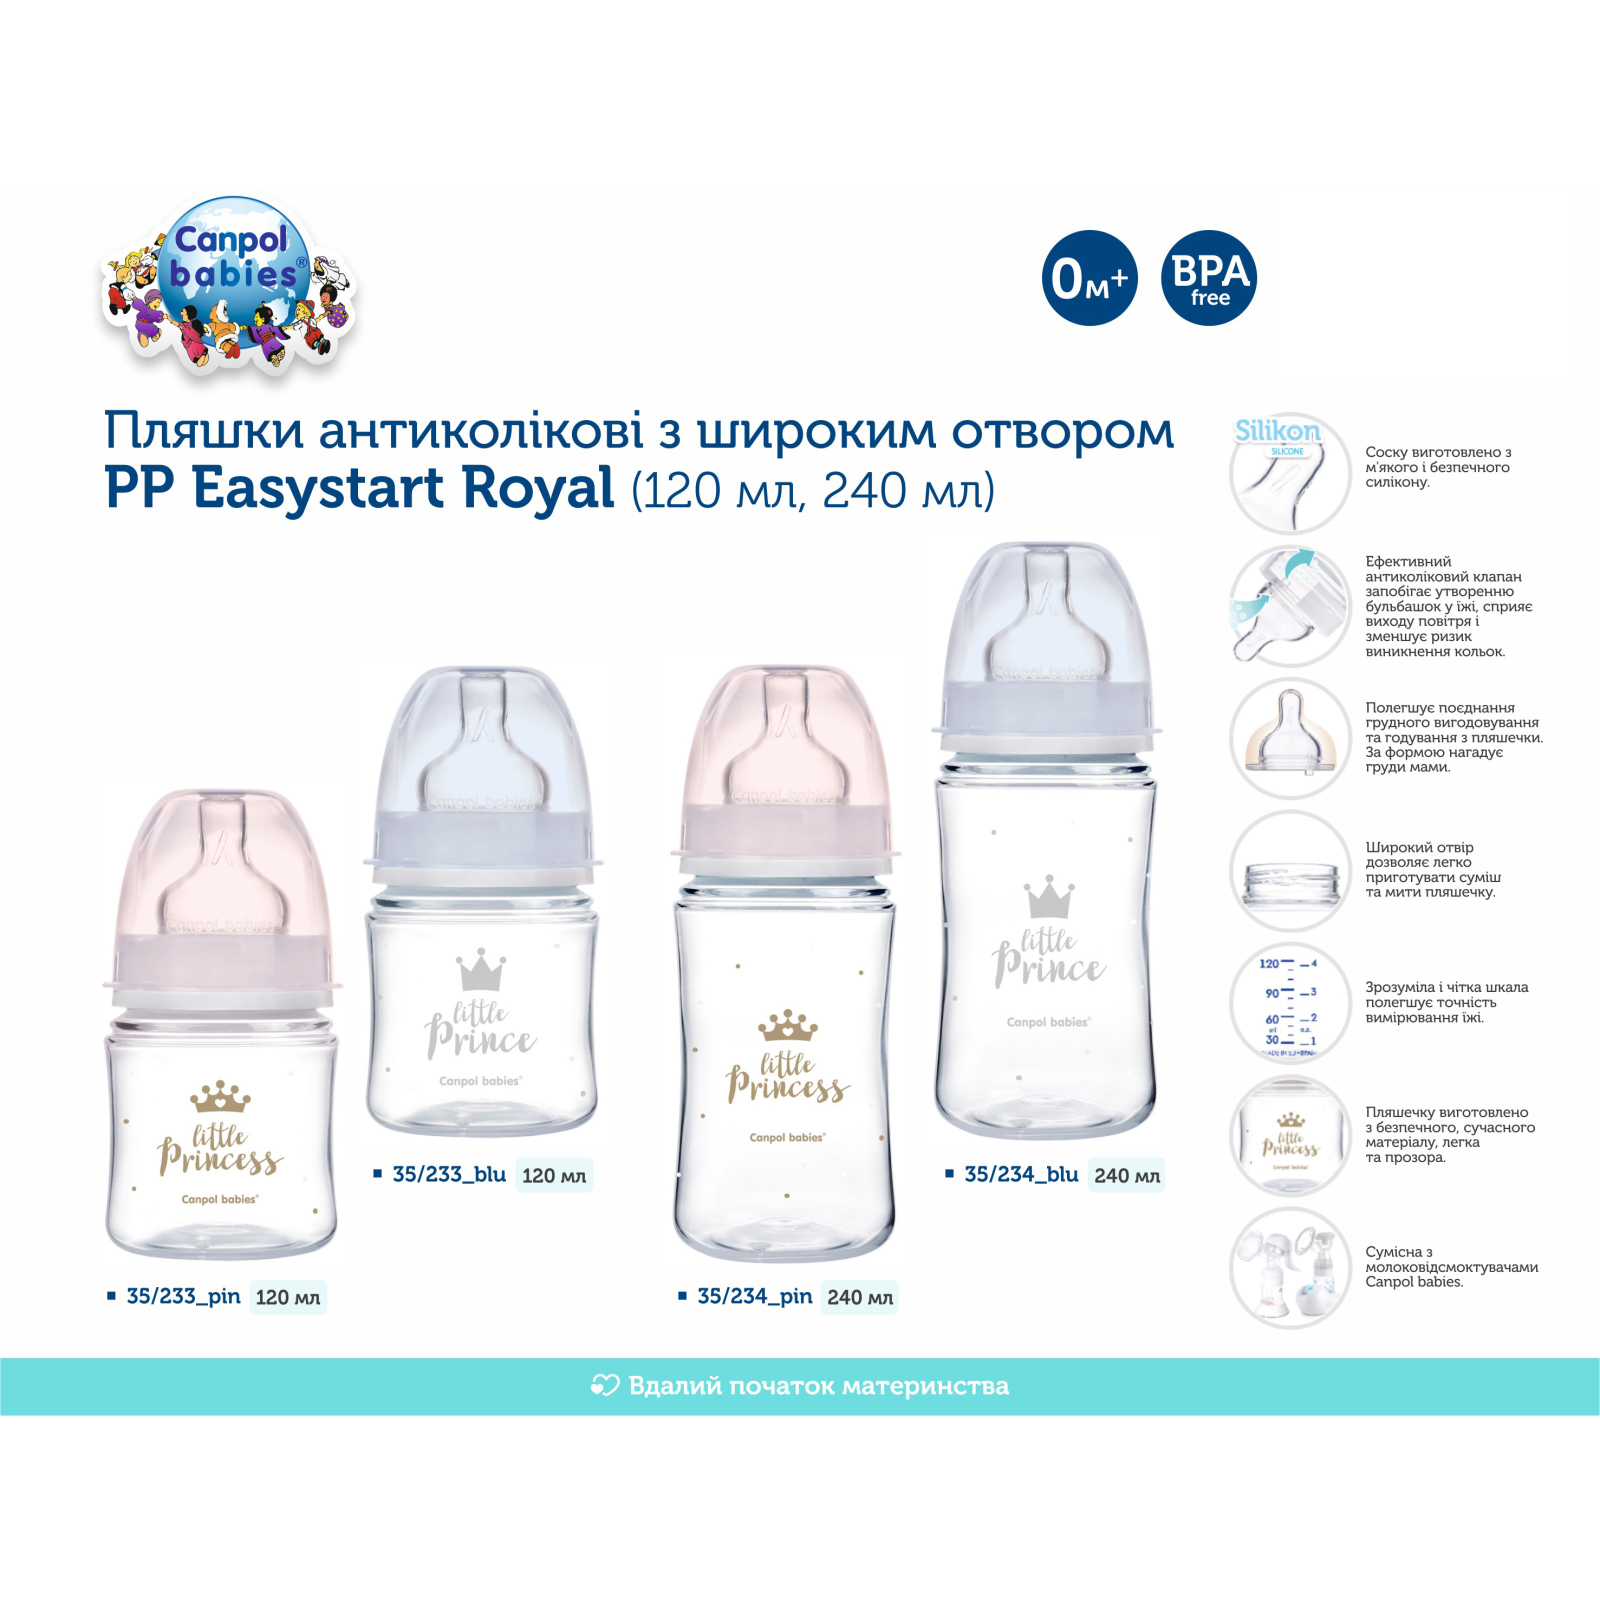 Бутылочка для кормления Canpol babies Royal Baby с широким отверстием 240 мл Синяя (35/234_blu) изображение 4